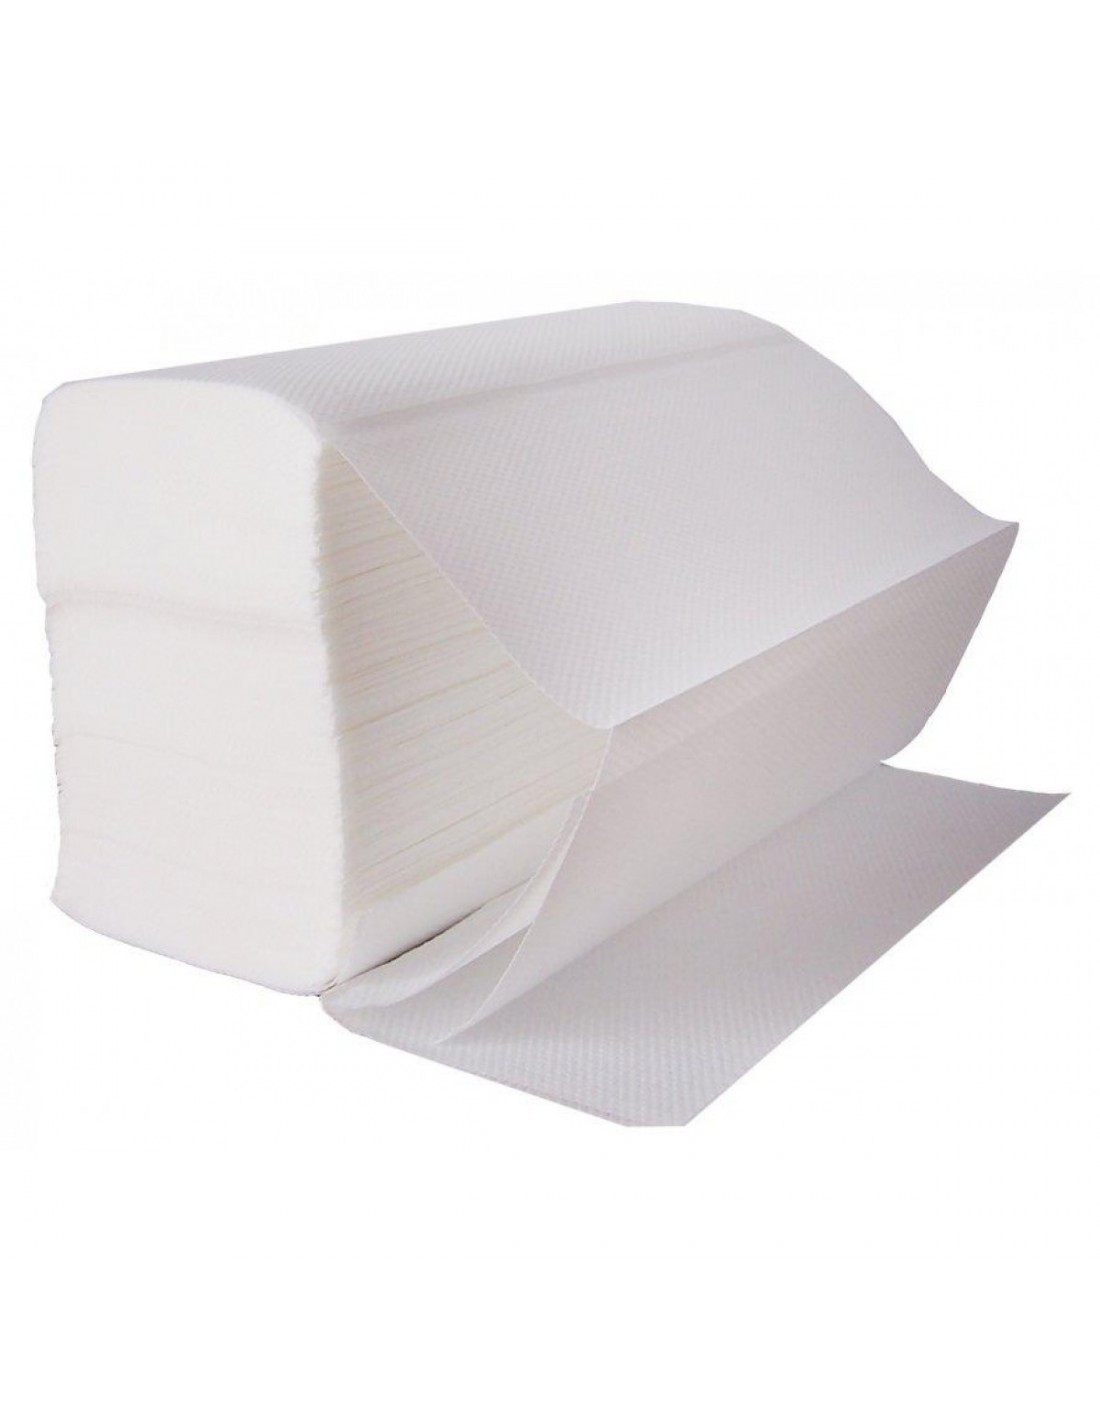 3000 Asciugamani a V in carta monouso Papernet dim. 24x21cm